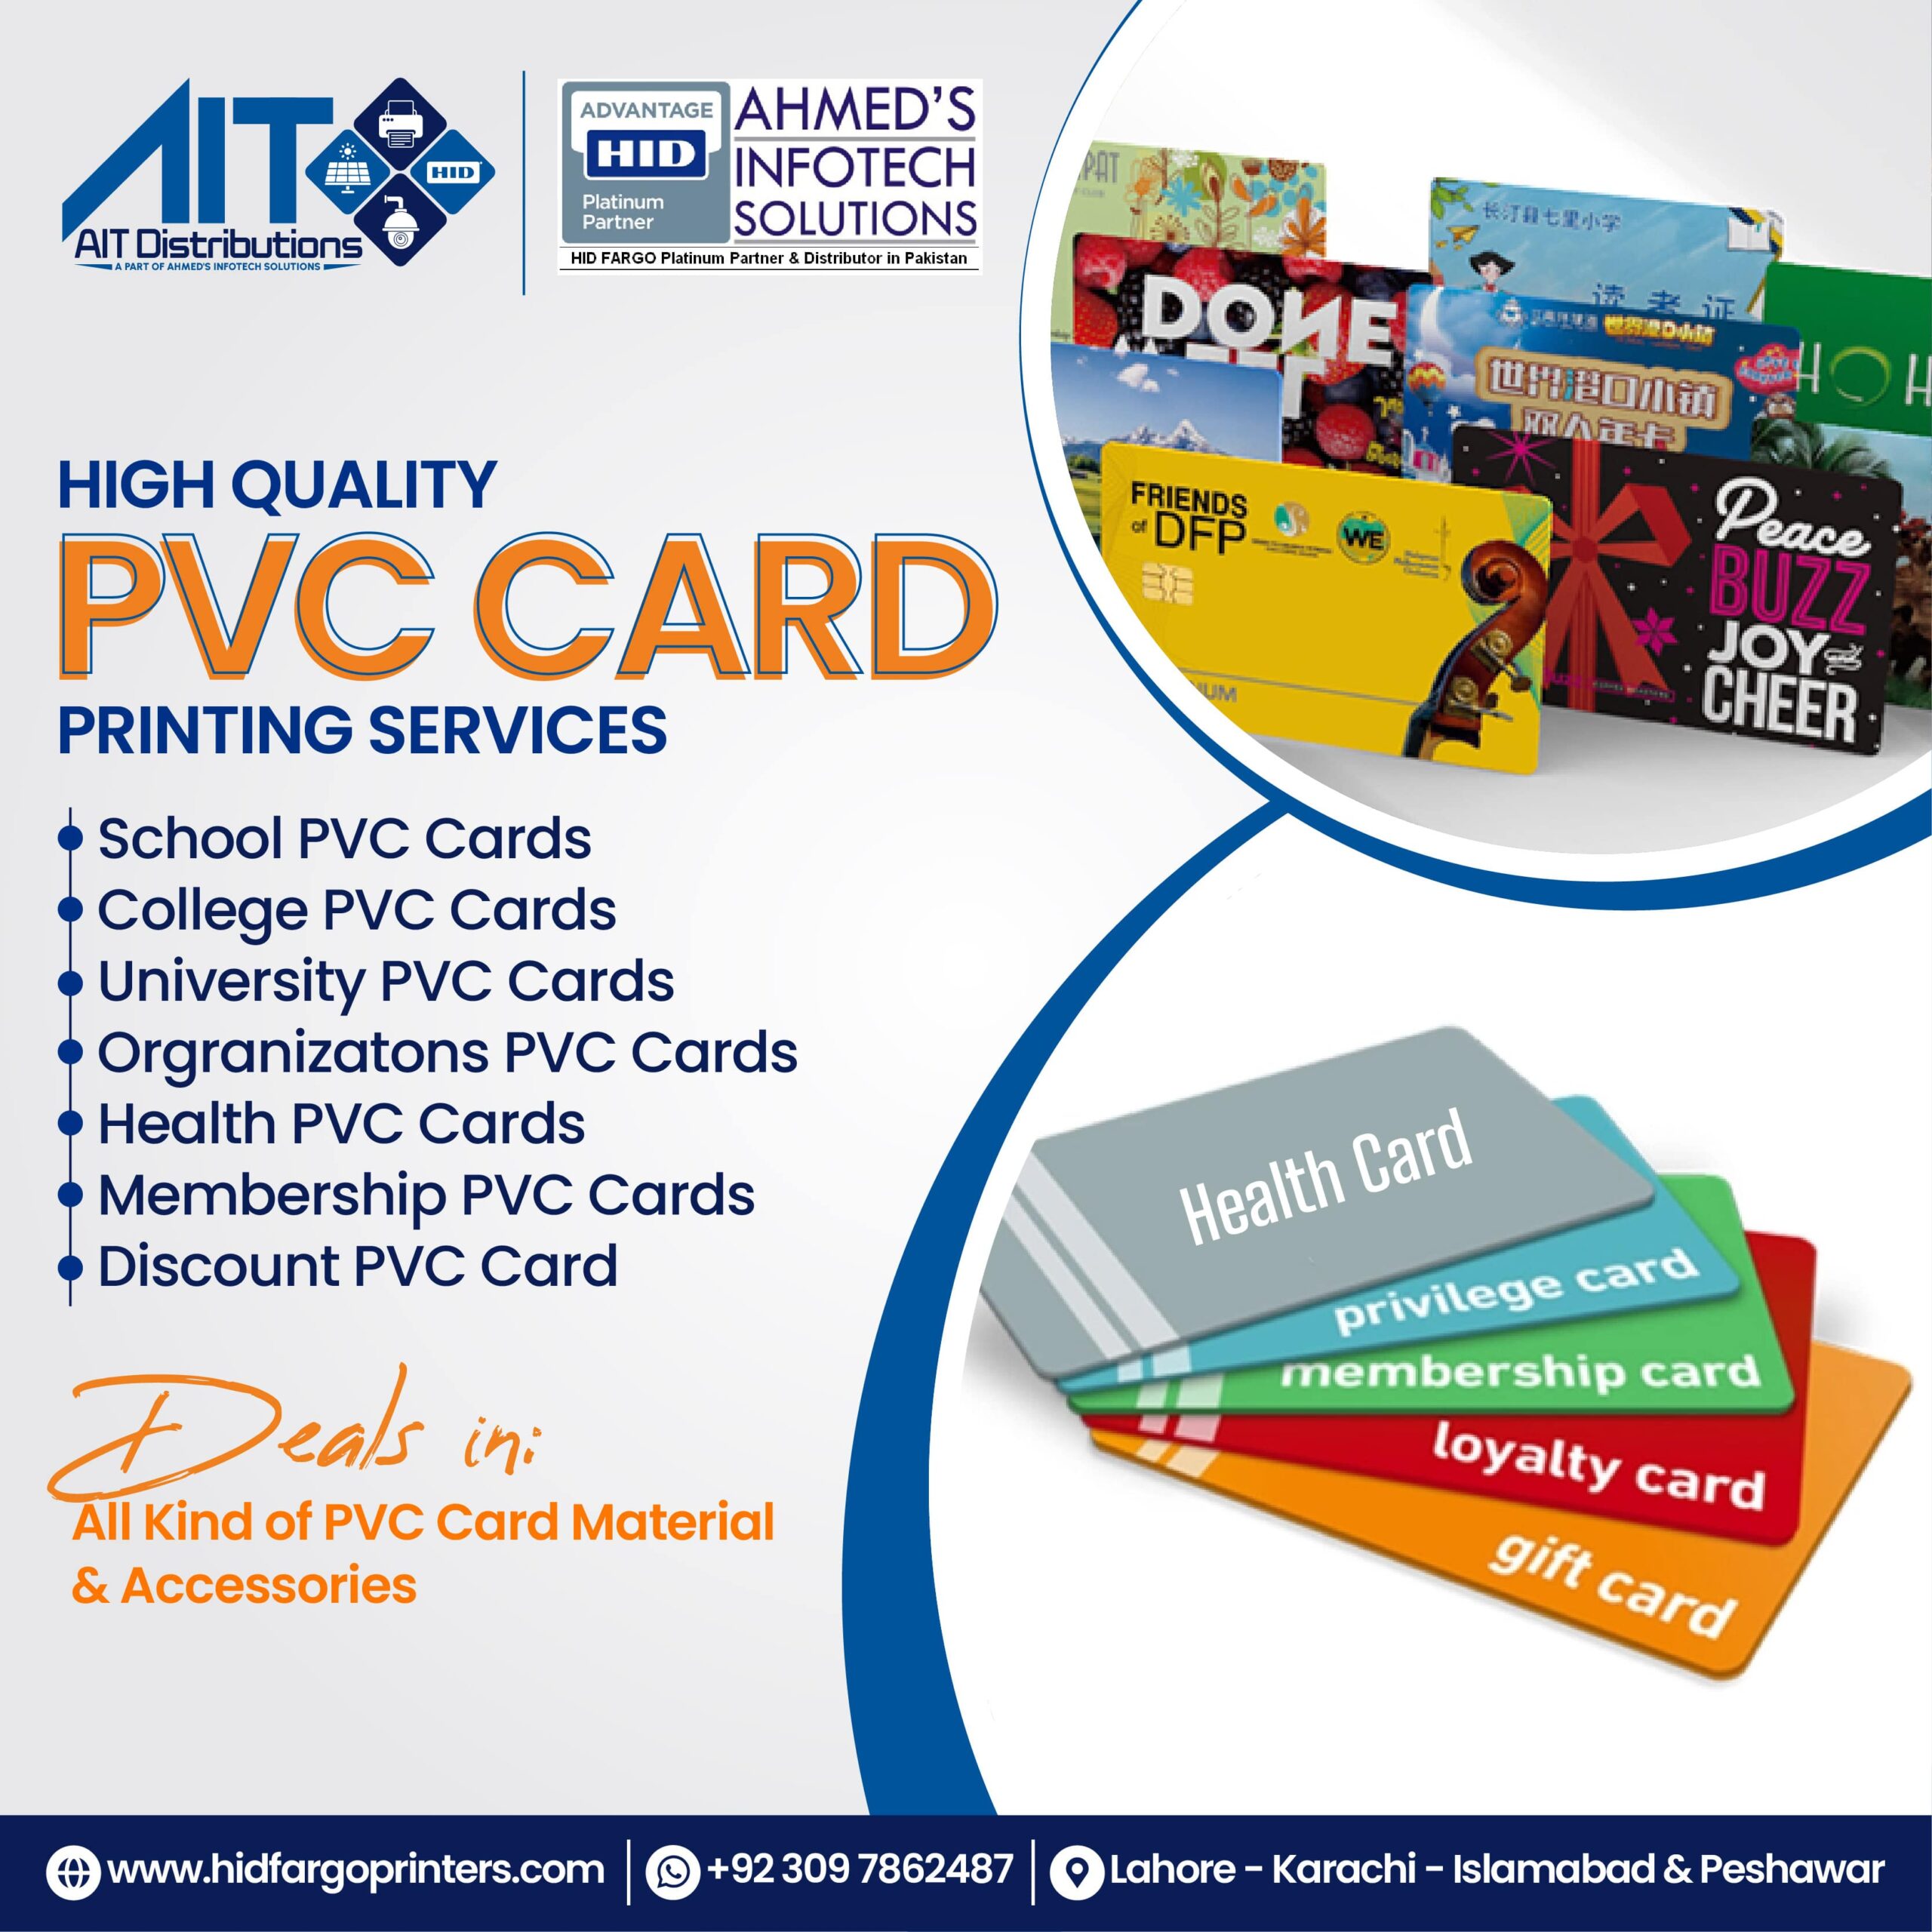 A PVC card images